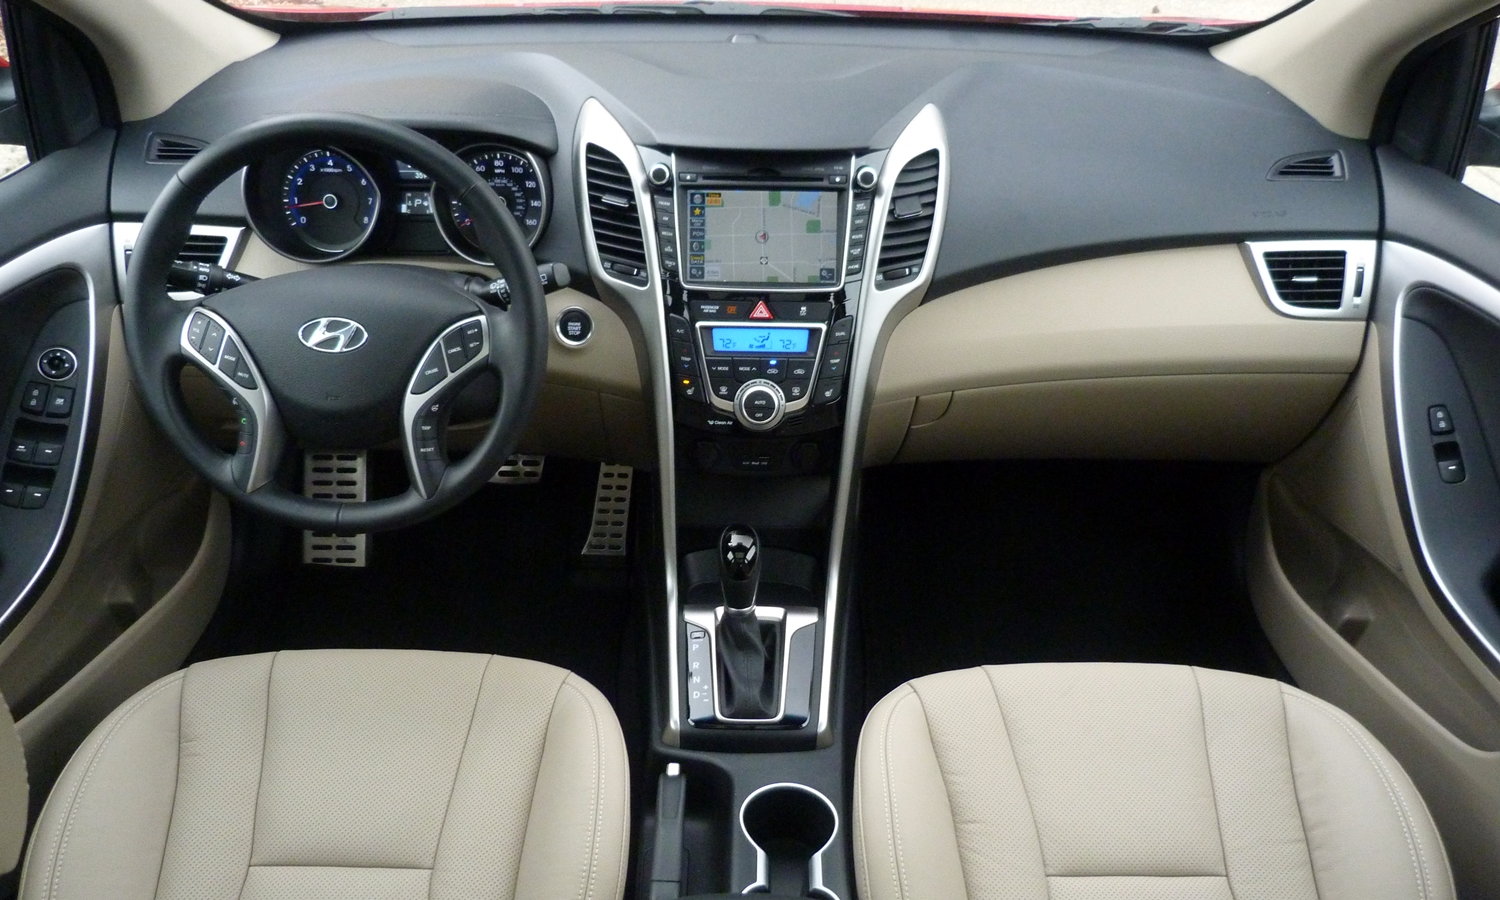 Hyundai Elantra Gt Photos Truedelta Car Reviews